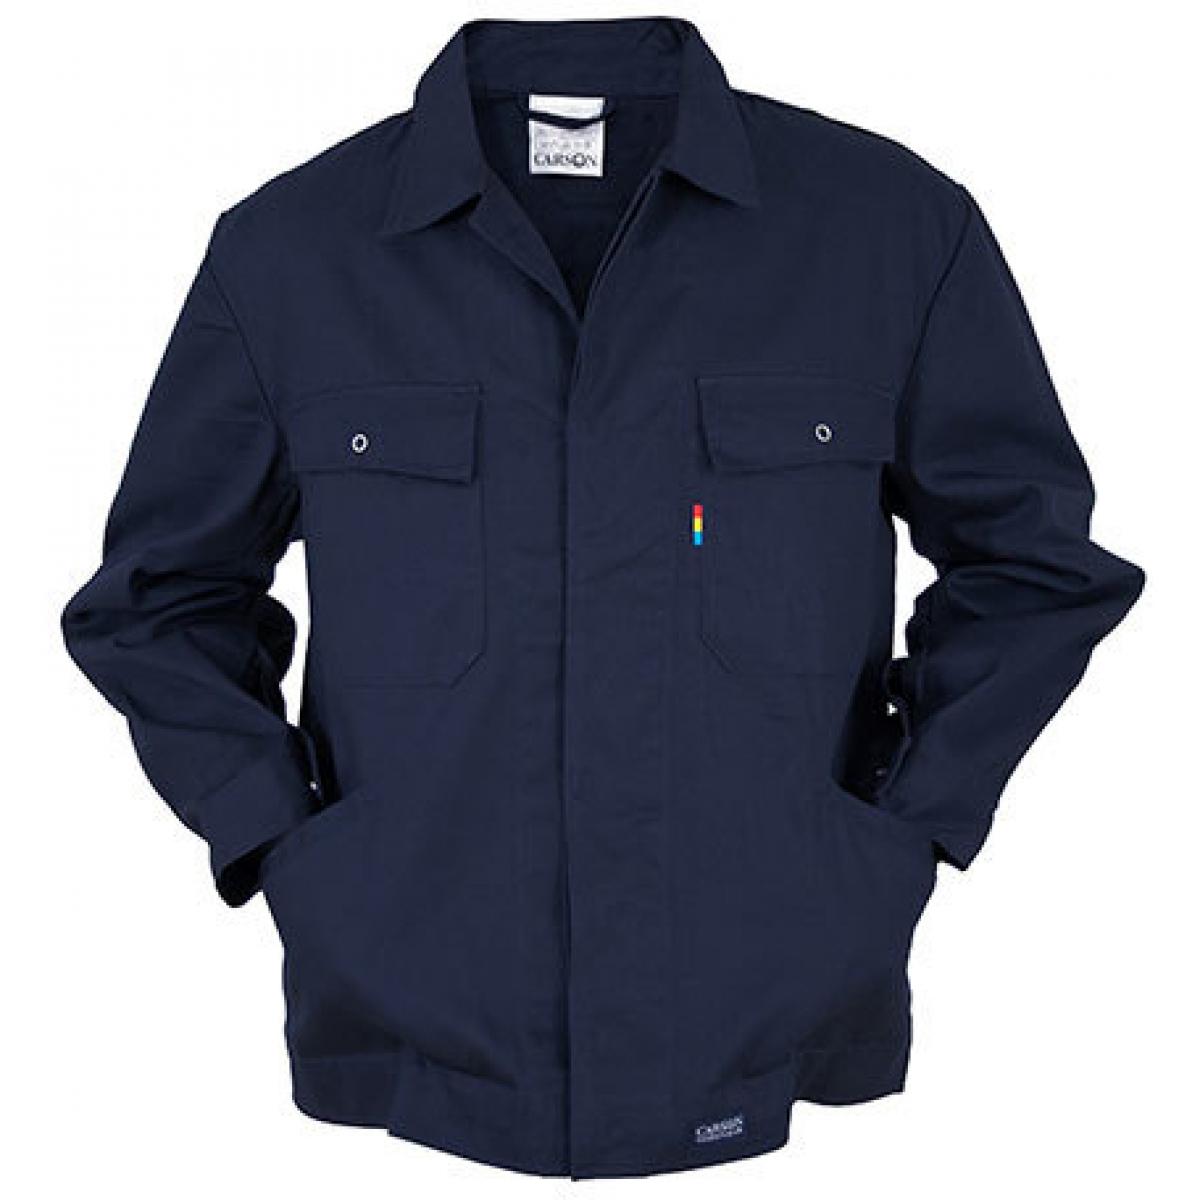 Hersteller: Carson Classic Workwear Herstellernummer: KTH728 Artikelbezeichnung: Herren Classic Blouson Work Jacket bis 60 Grad waschbar Farbe: Navy